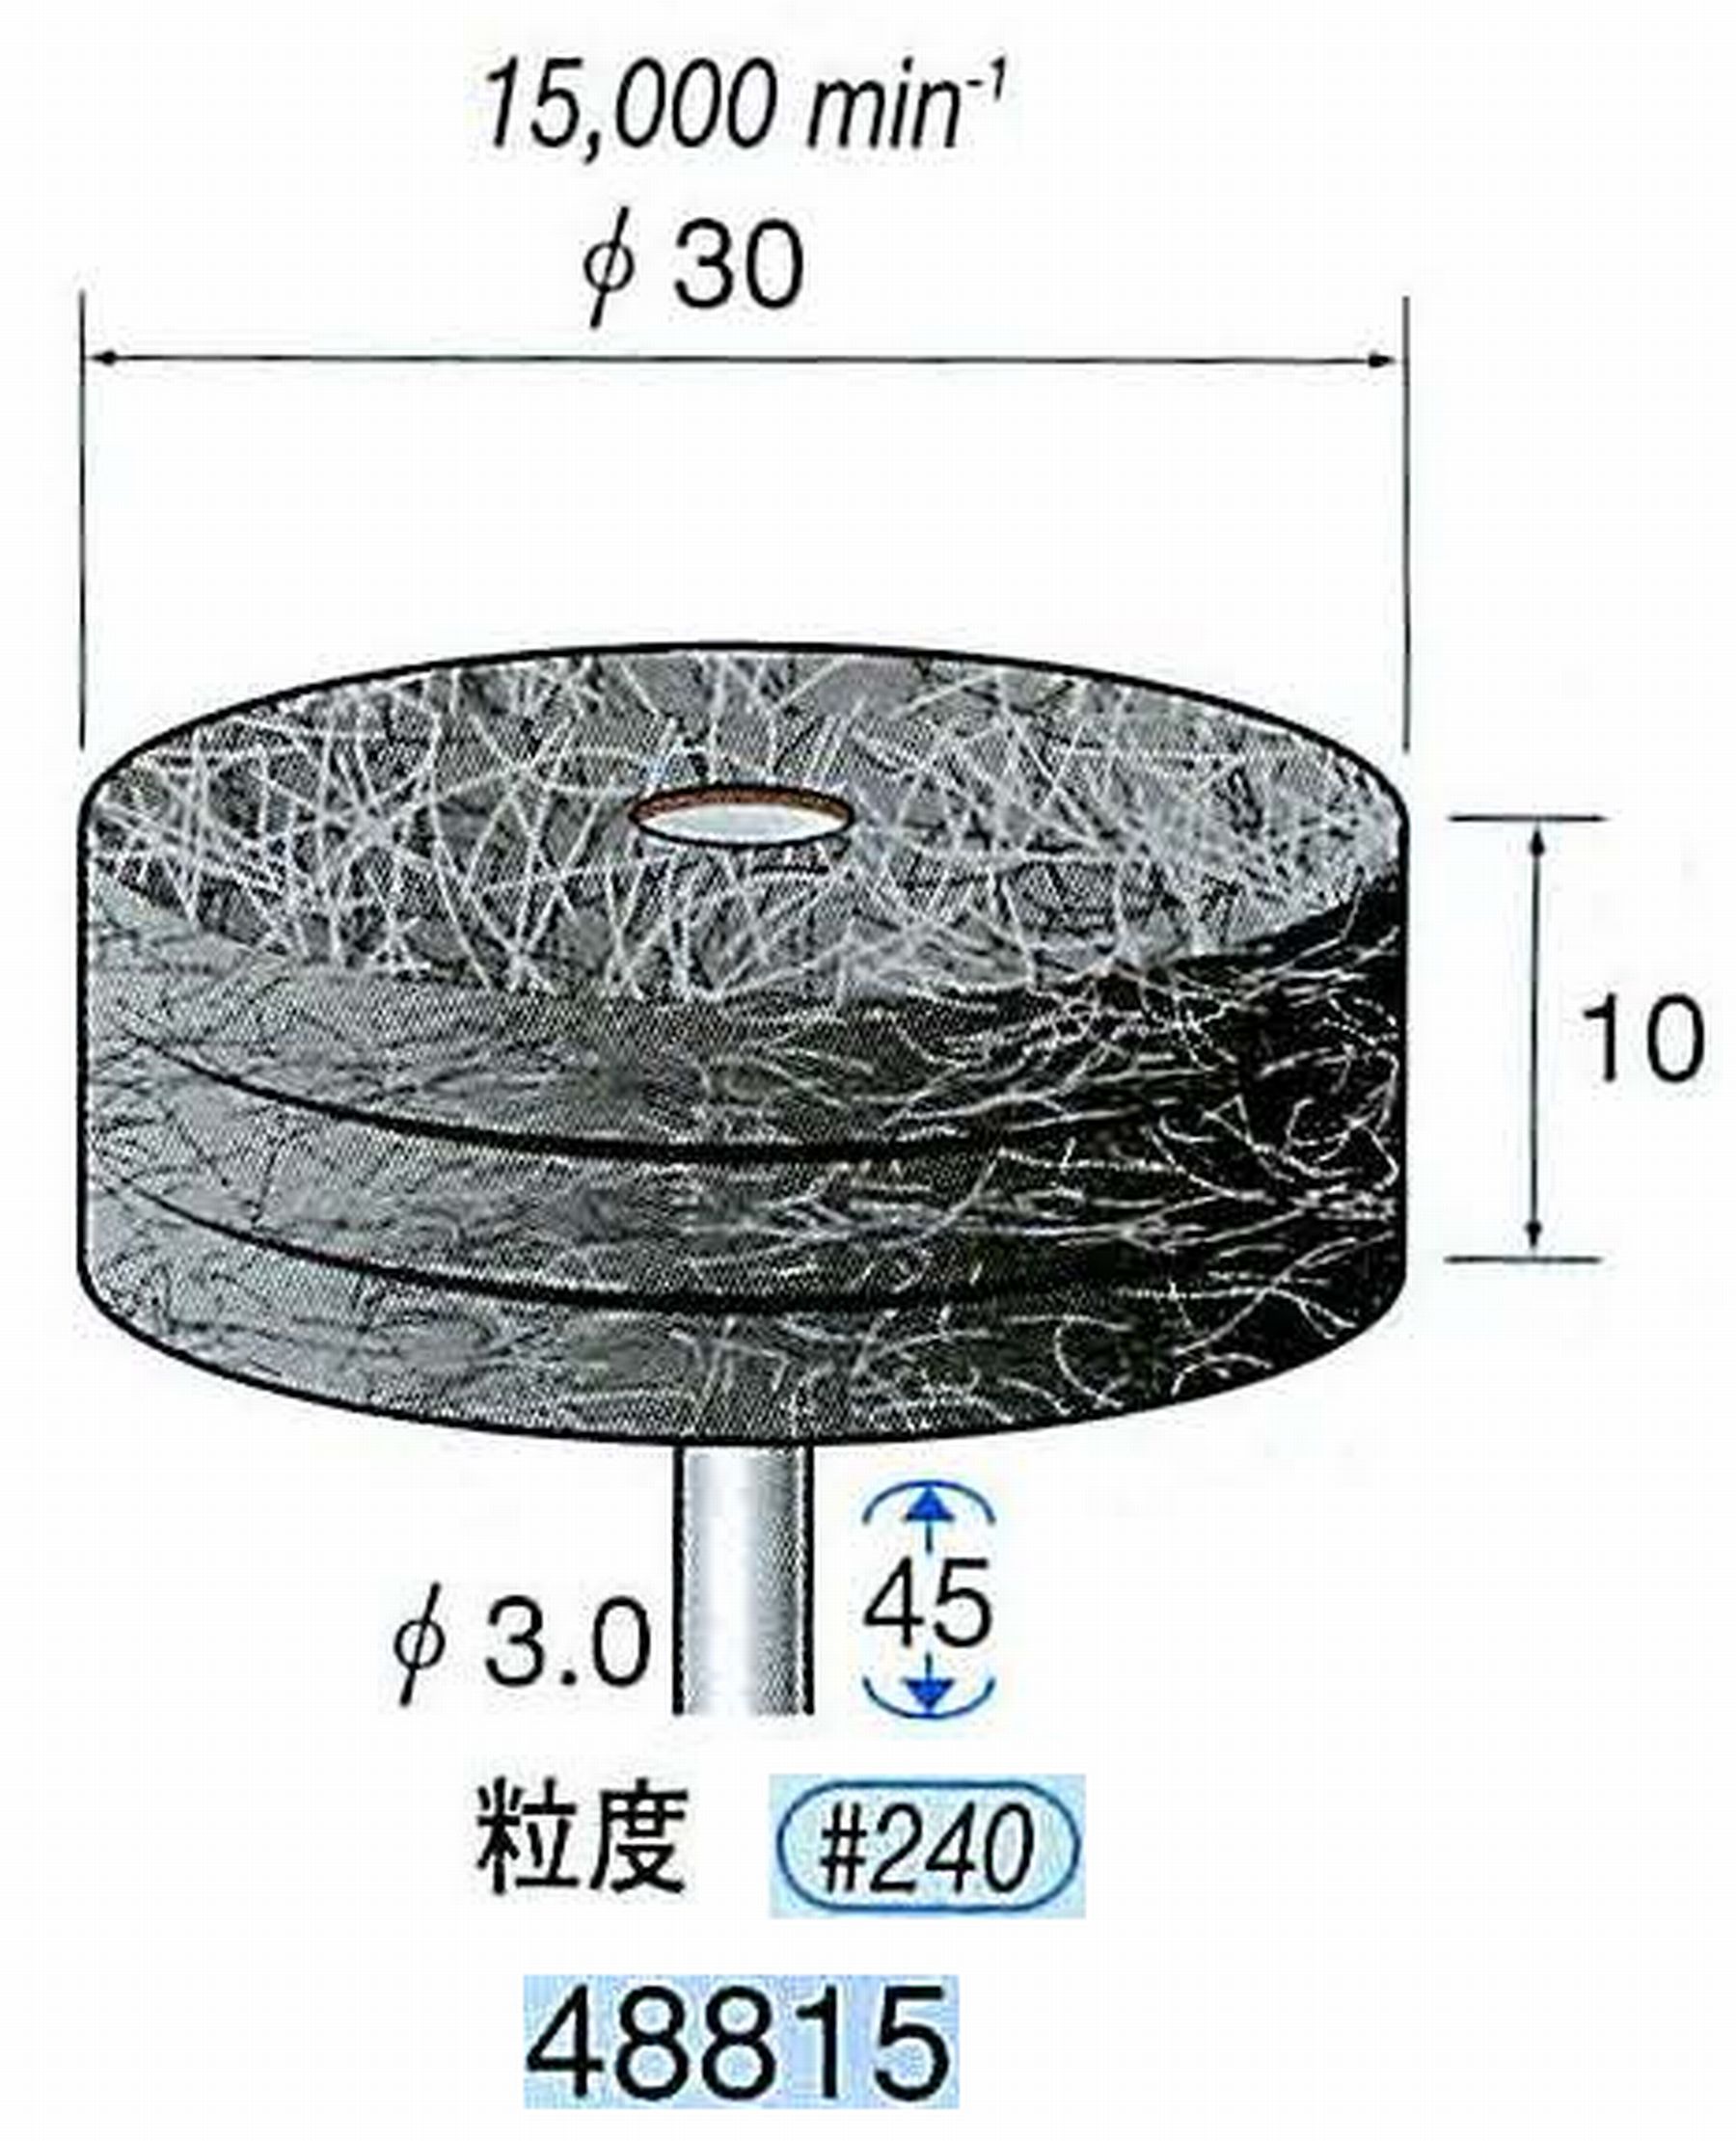 ナカニシ/NAKANISHI スポンジサンダー(研磨砥粒入り) 軸径(シャンク)φ3.0mm 48815